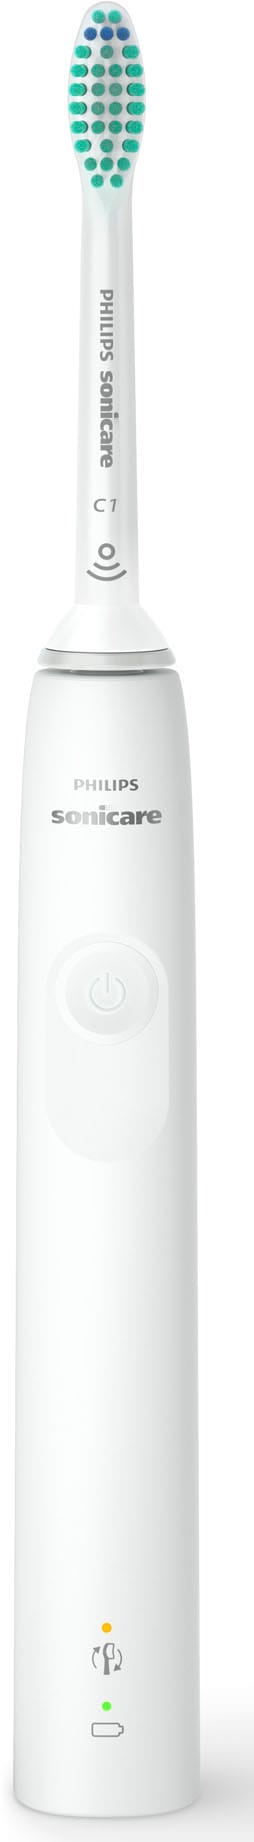 Philips Sonicare Elektrische Zahnbürste »Series 3100 HX3673«, 1 St.  Aufsteckbürsten, mit Schalltechnologie, 4-Quadranten-Timer und 2-Minuten-Timer  mit 3 Jahren XXL Garantie